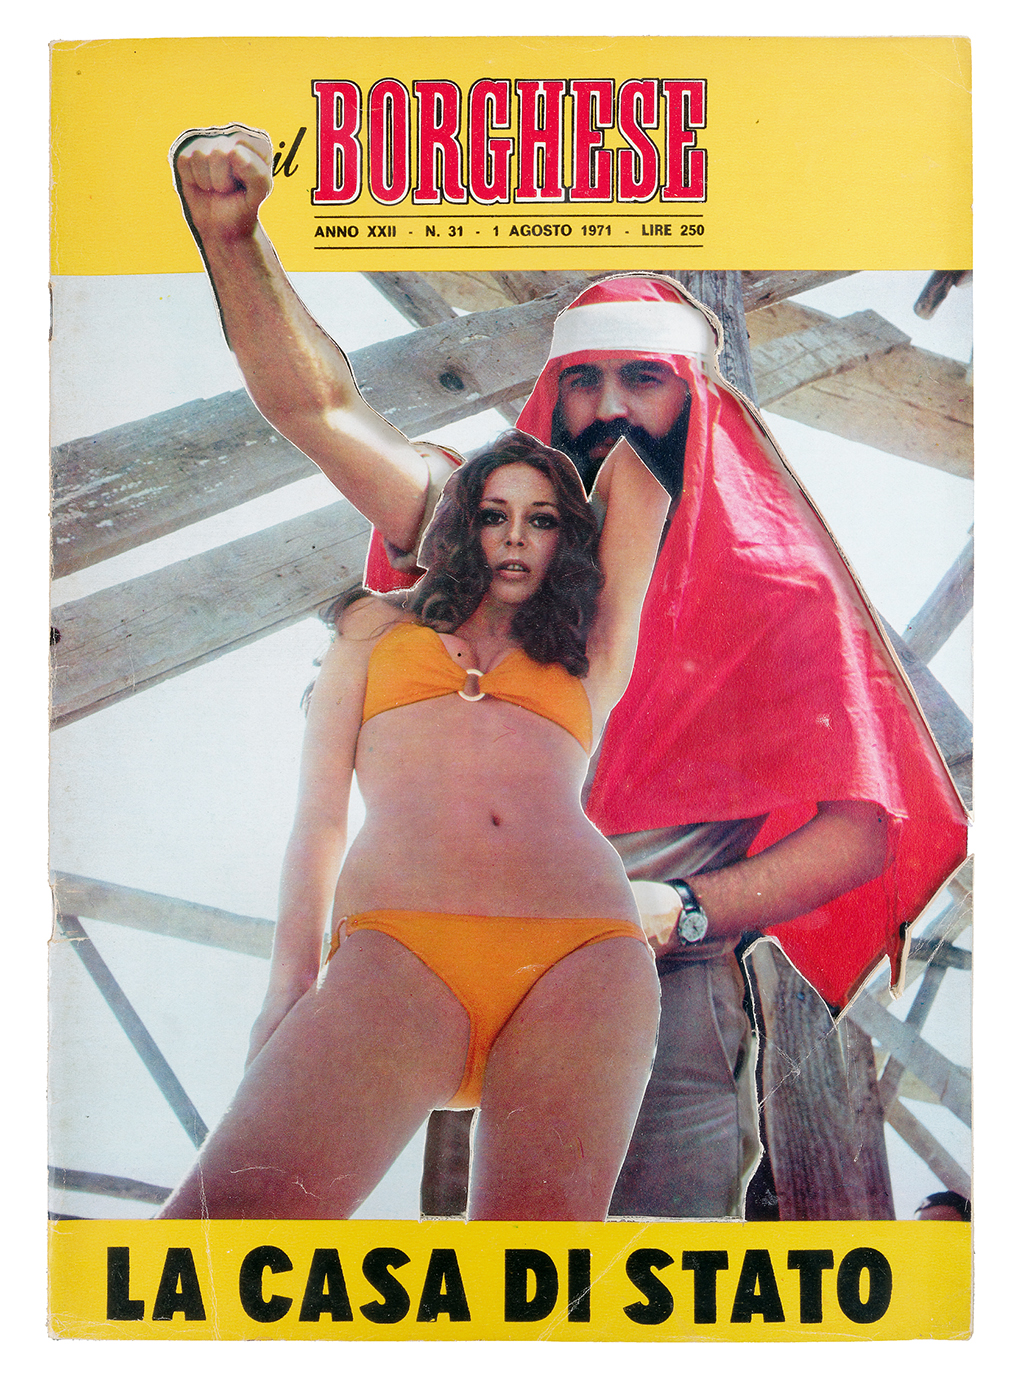 Renaud Auguste-Dormeuil - Uncover - Il Borghese 1 Agosto 1971, 2013